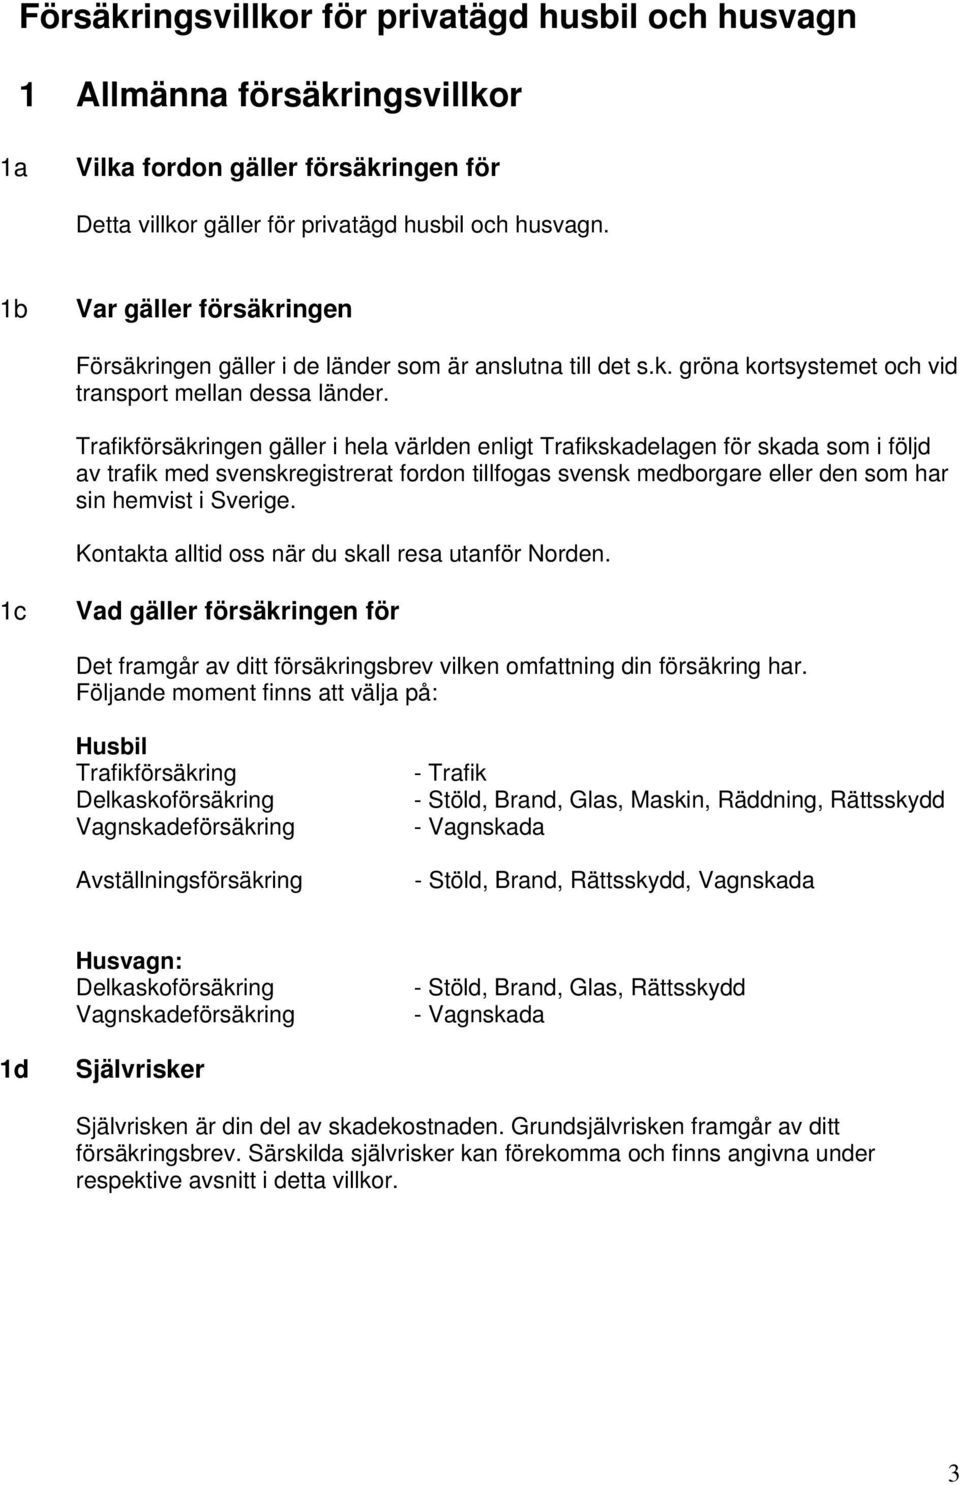 Trafikförsäkringen gäller i hela världen enligt Trafikskadelagen för skada som i följd av trafik med svenskregistrerat fordon tillfogas svensk medborgare eller den som har sin hemvist i Sverige.